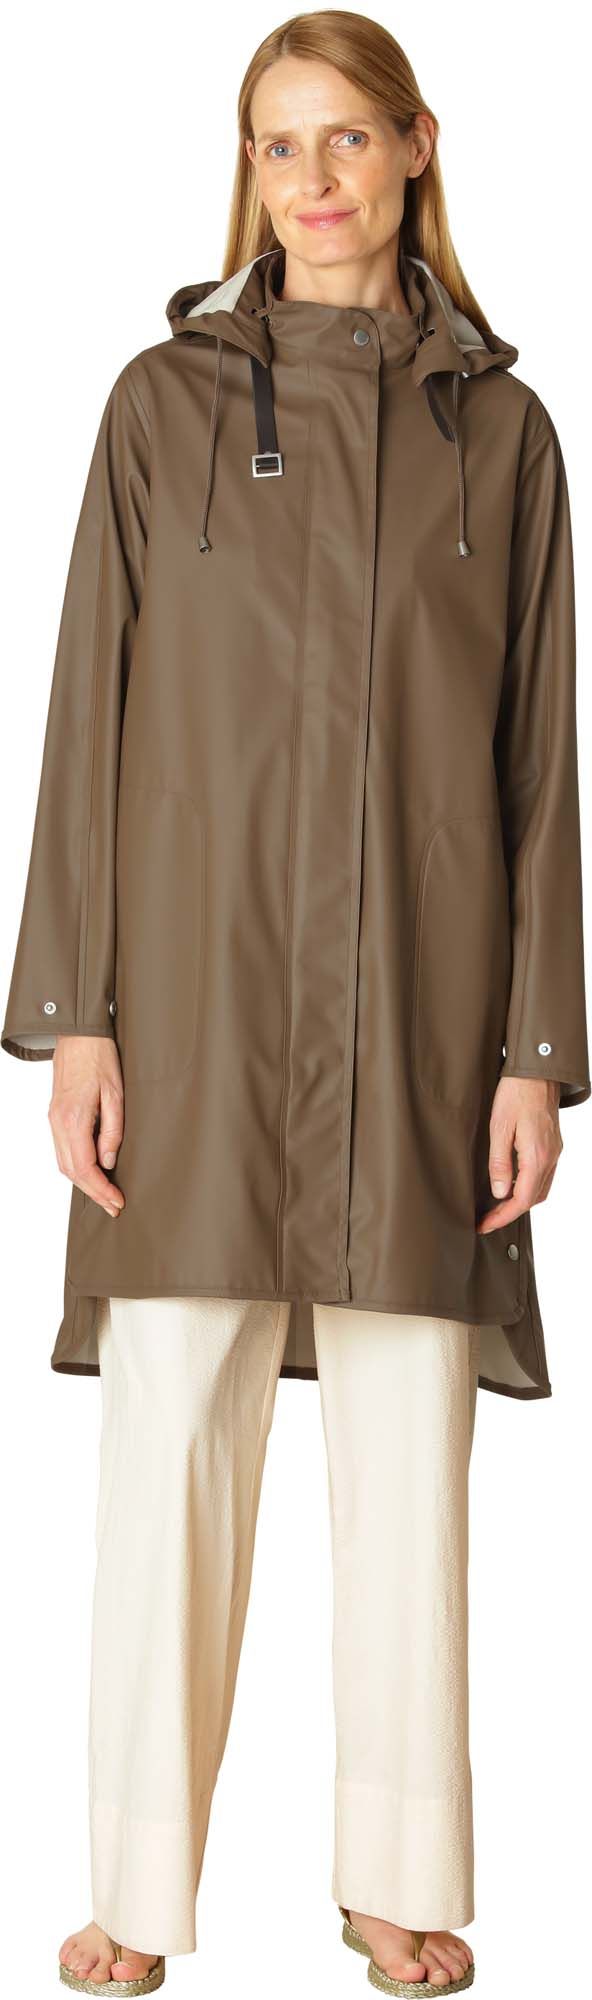 Ilse Jacobsen Women's Raincoat Detachable Hood Cub Brown Ilse Jacobsen